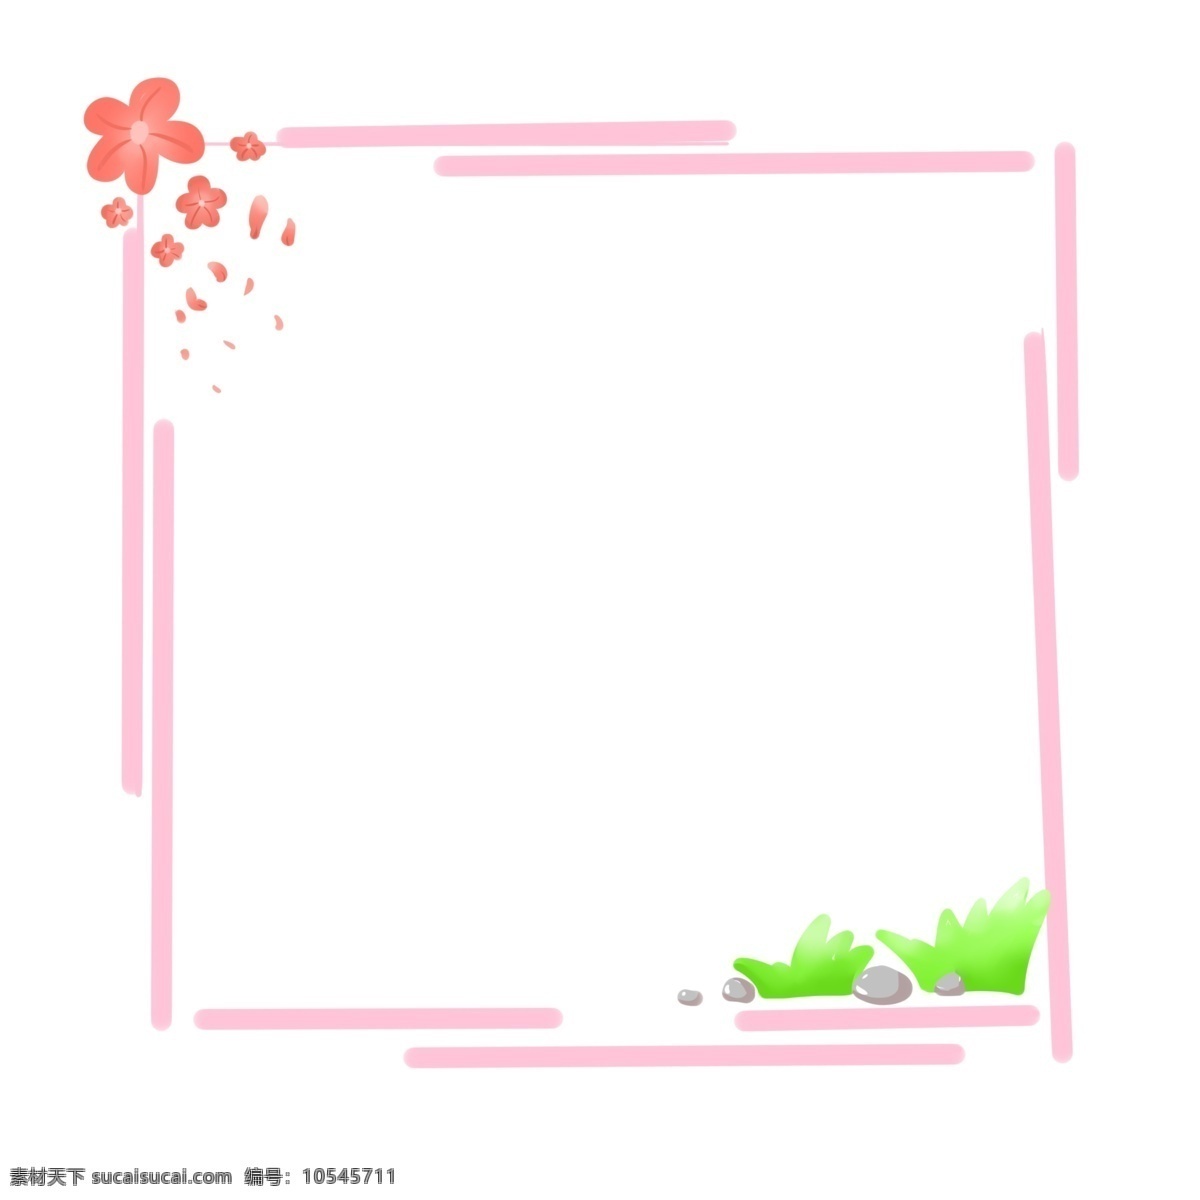 卡通 不 协调 边框 插图 灰色小石头 绿色植物 红色花瓣 春季边框 粉色的边框 卡通边框 万物复苏 装饰边框